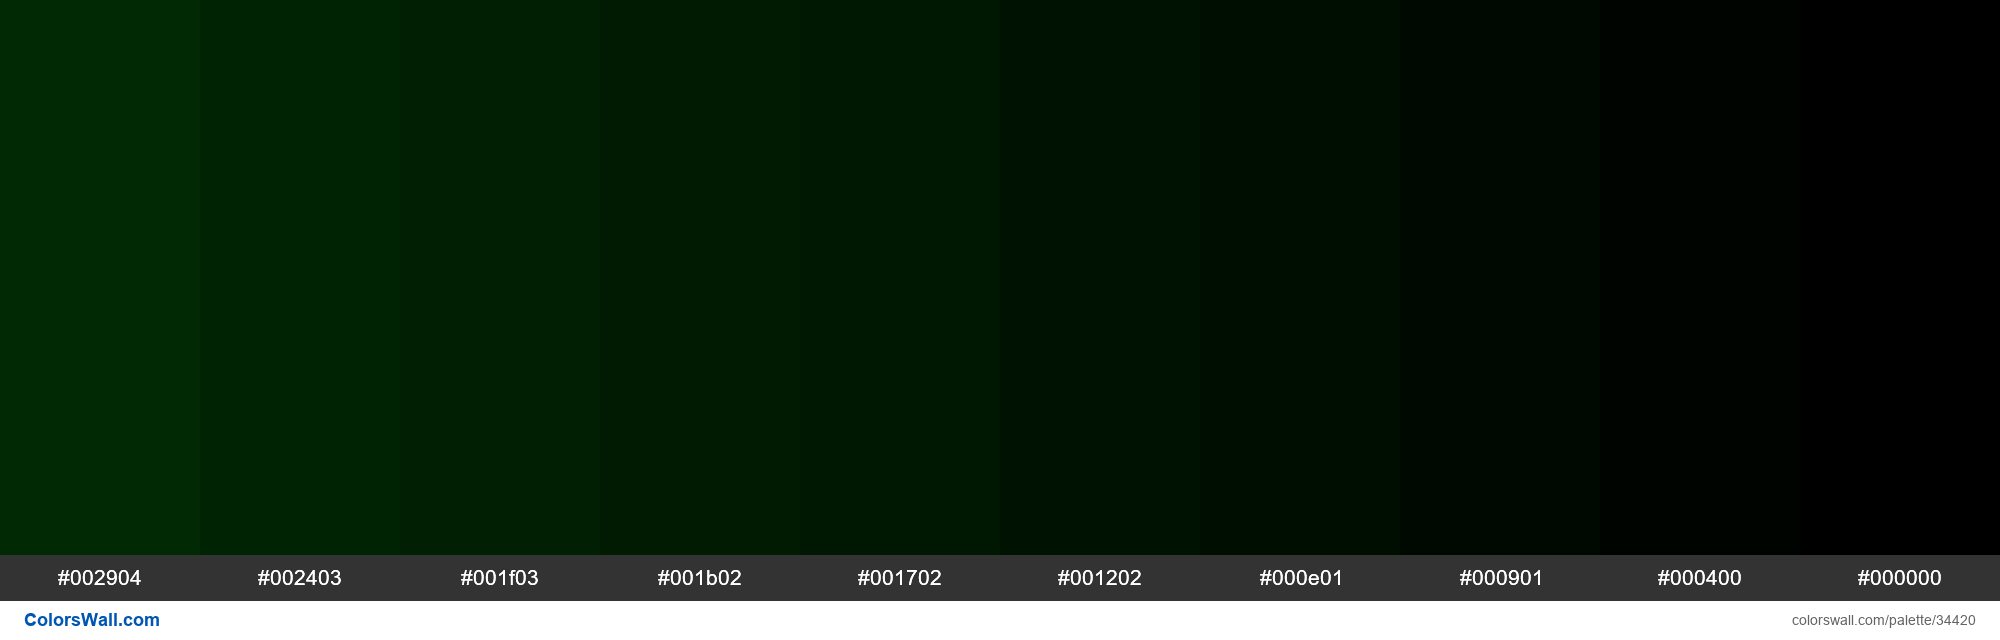 Зеленый код пикселя. Зеленый 008000. Оттенки зеленого hex. Зеленый цвет RGB. Зелёный тёмный цвет RGB.